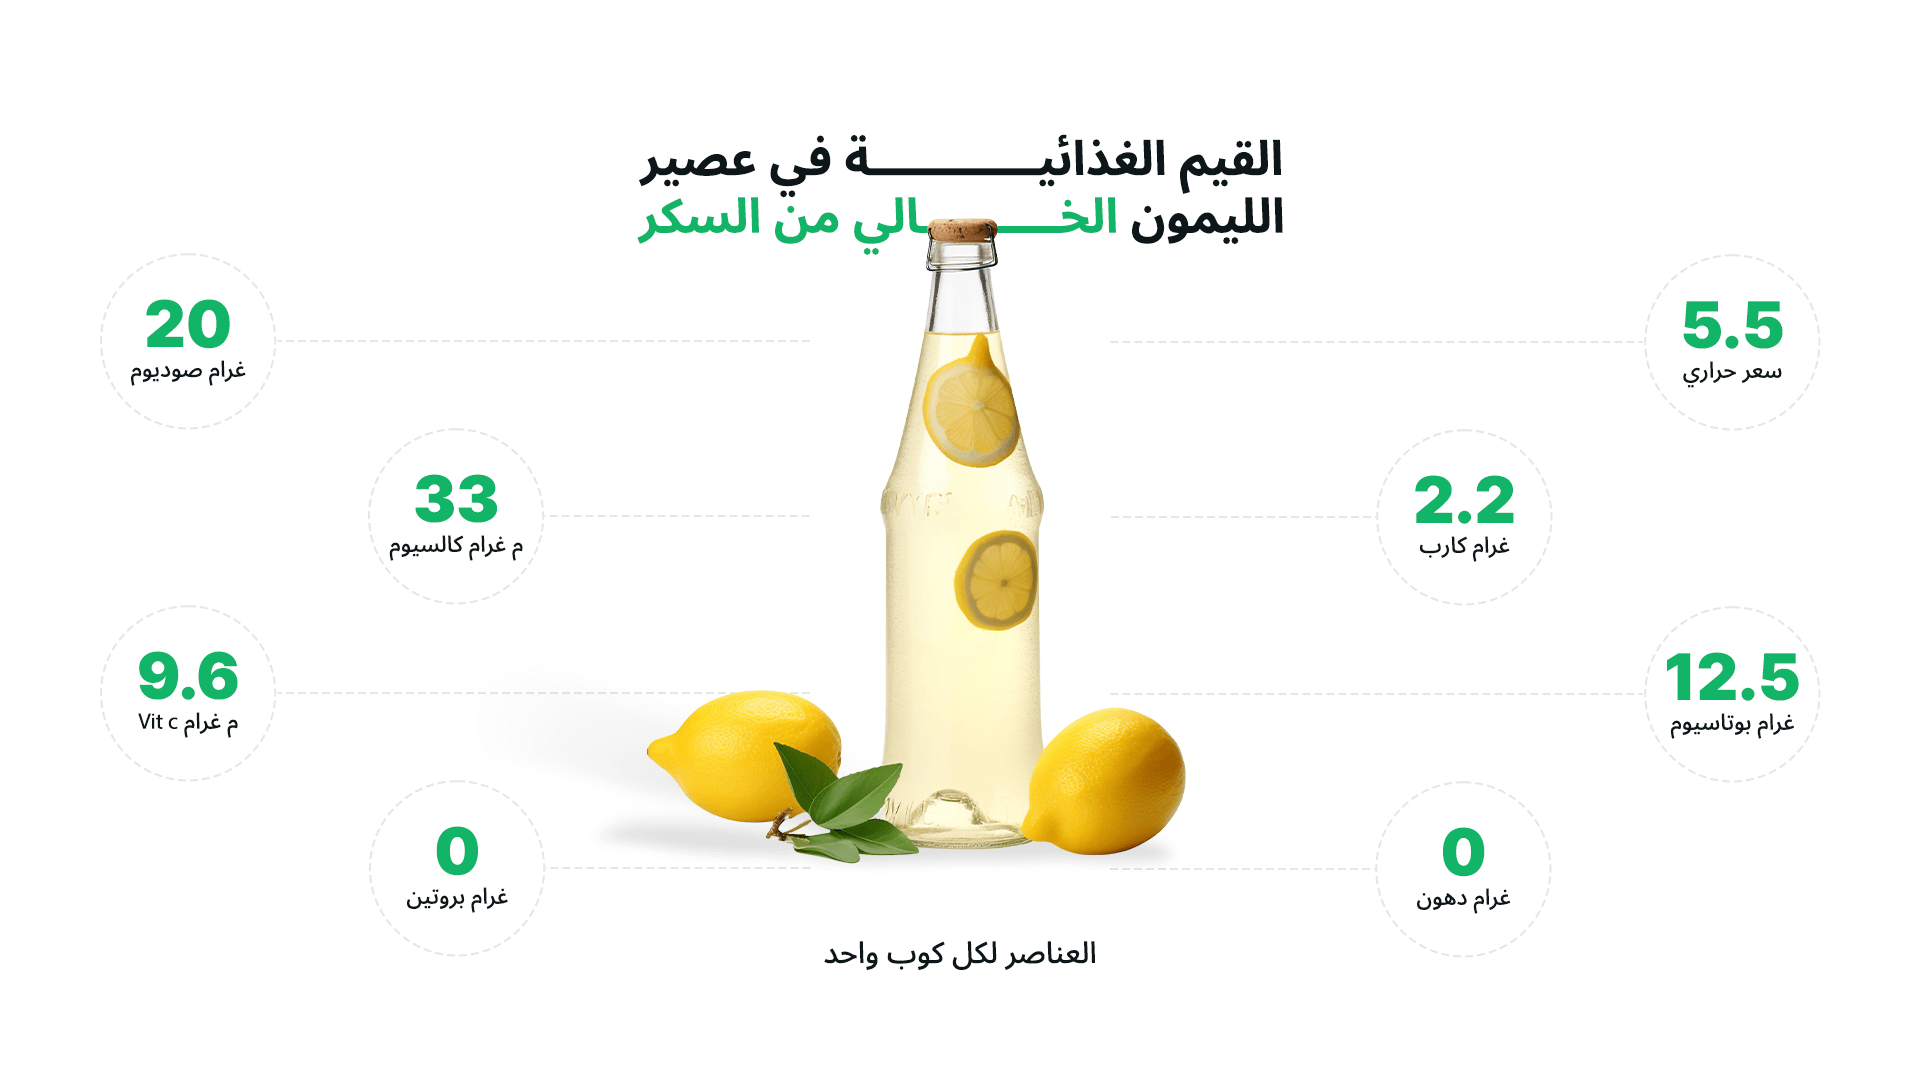 تظهر الصورة زجاجة عصير الليمون أو الليموناضة وحواليها القيم الغذائية في عصير الليمون الخالي من السكر لكل كوب واحد مثل الكربوهيدرات والدهون والبروتين والفيتامينات والمعادن والسعرات الحرارية